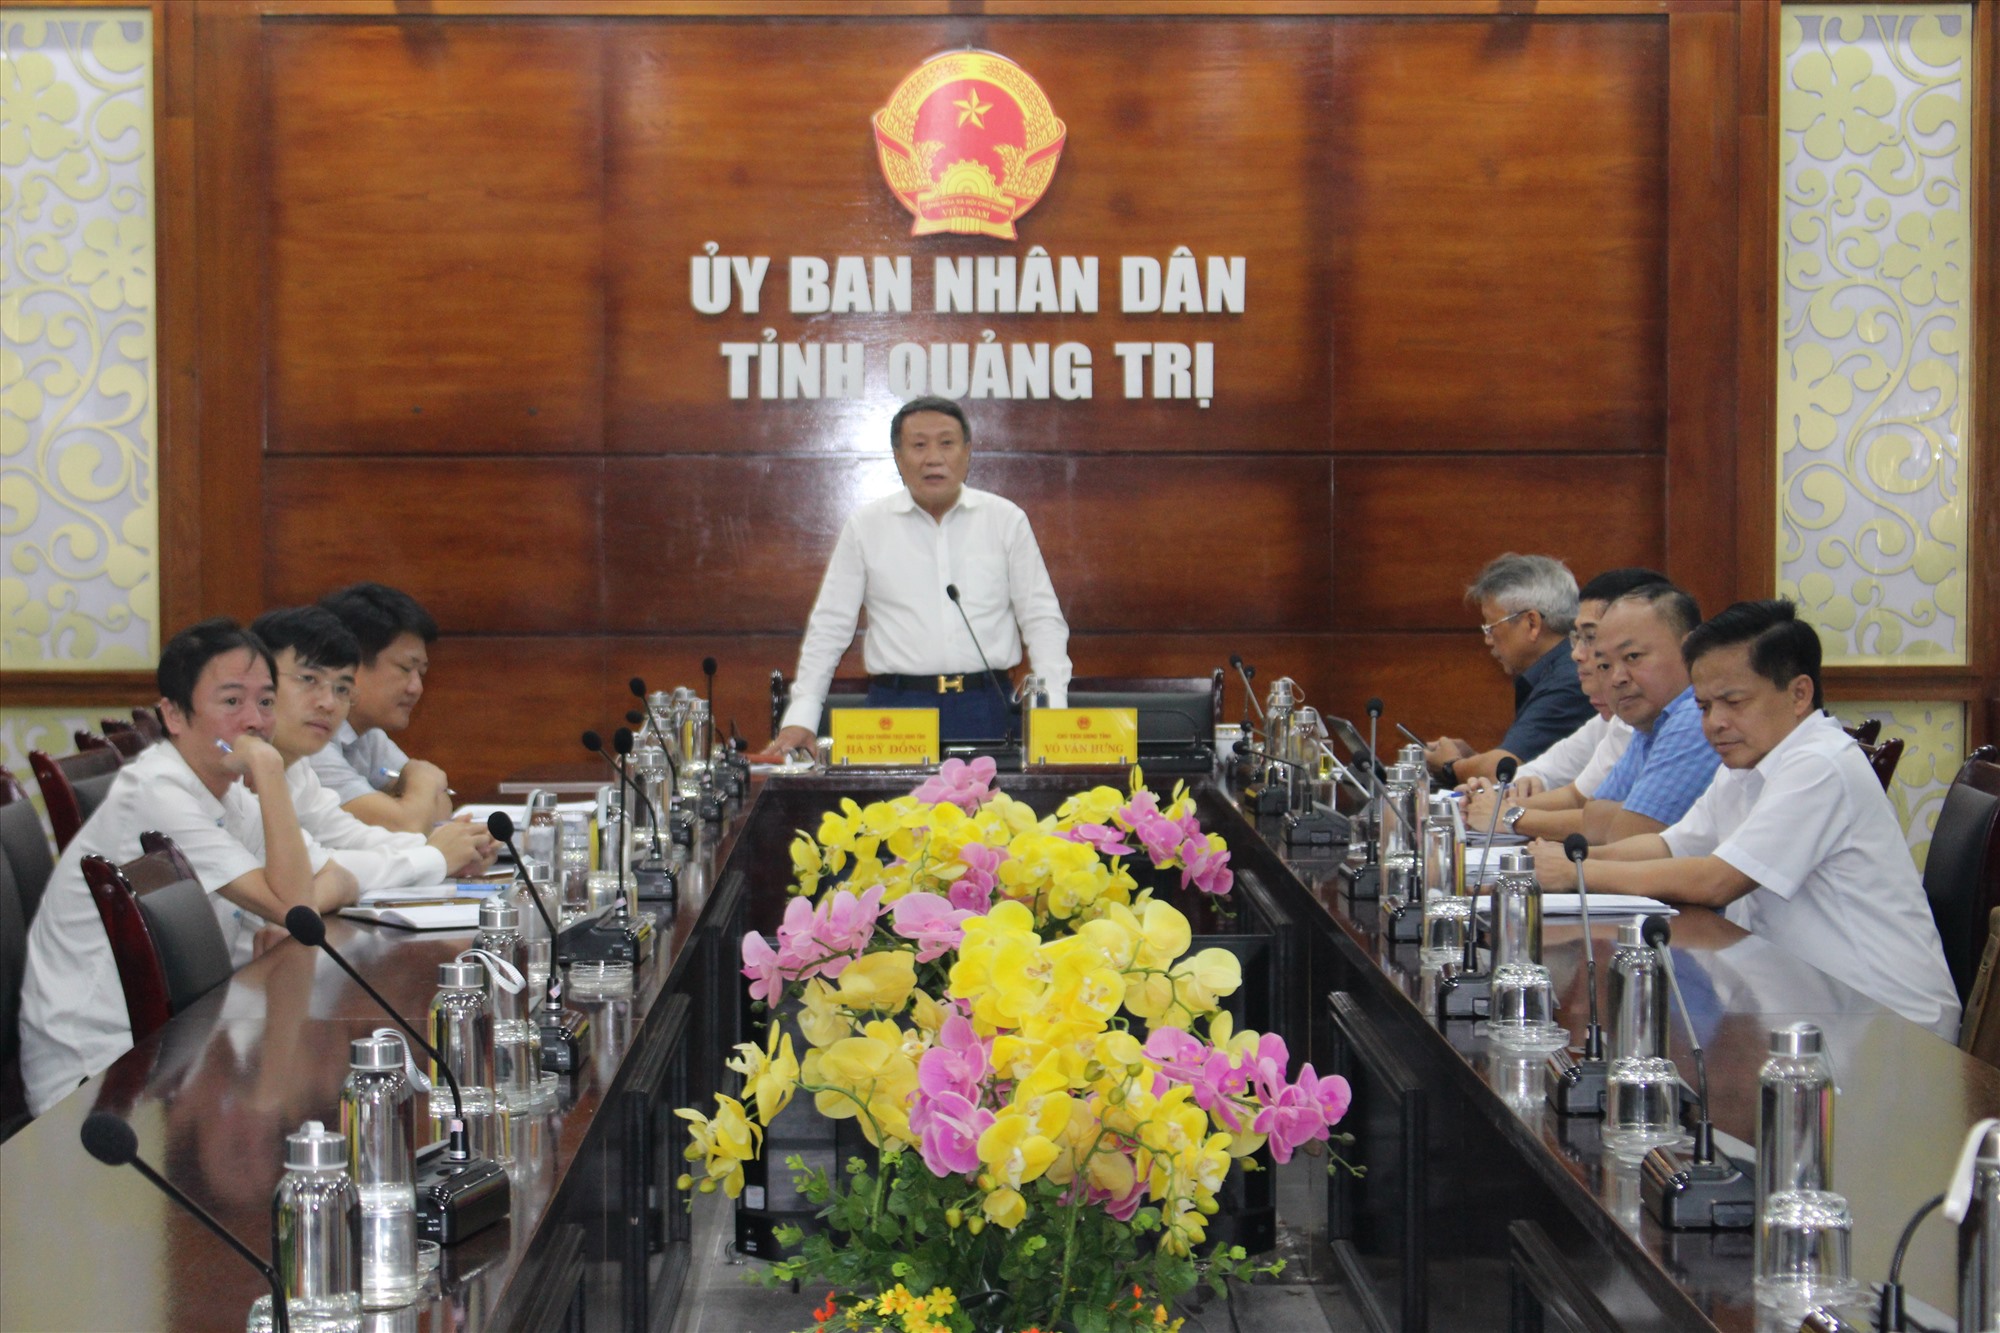 Phó Chủ tịch Thường trực UBND tỉnh Hà Sỹ Đồng tham gia phát biểu tại hội nghị - Ảnh: T.T